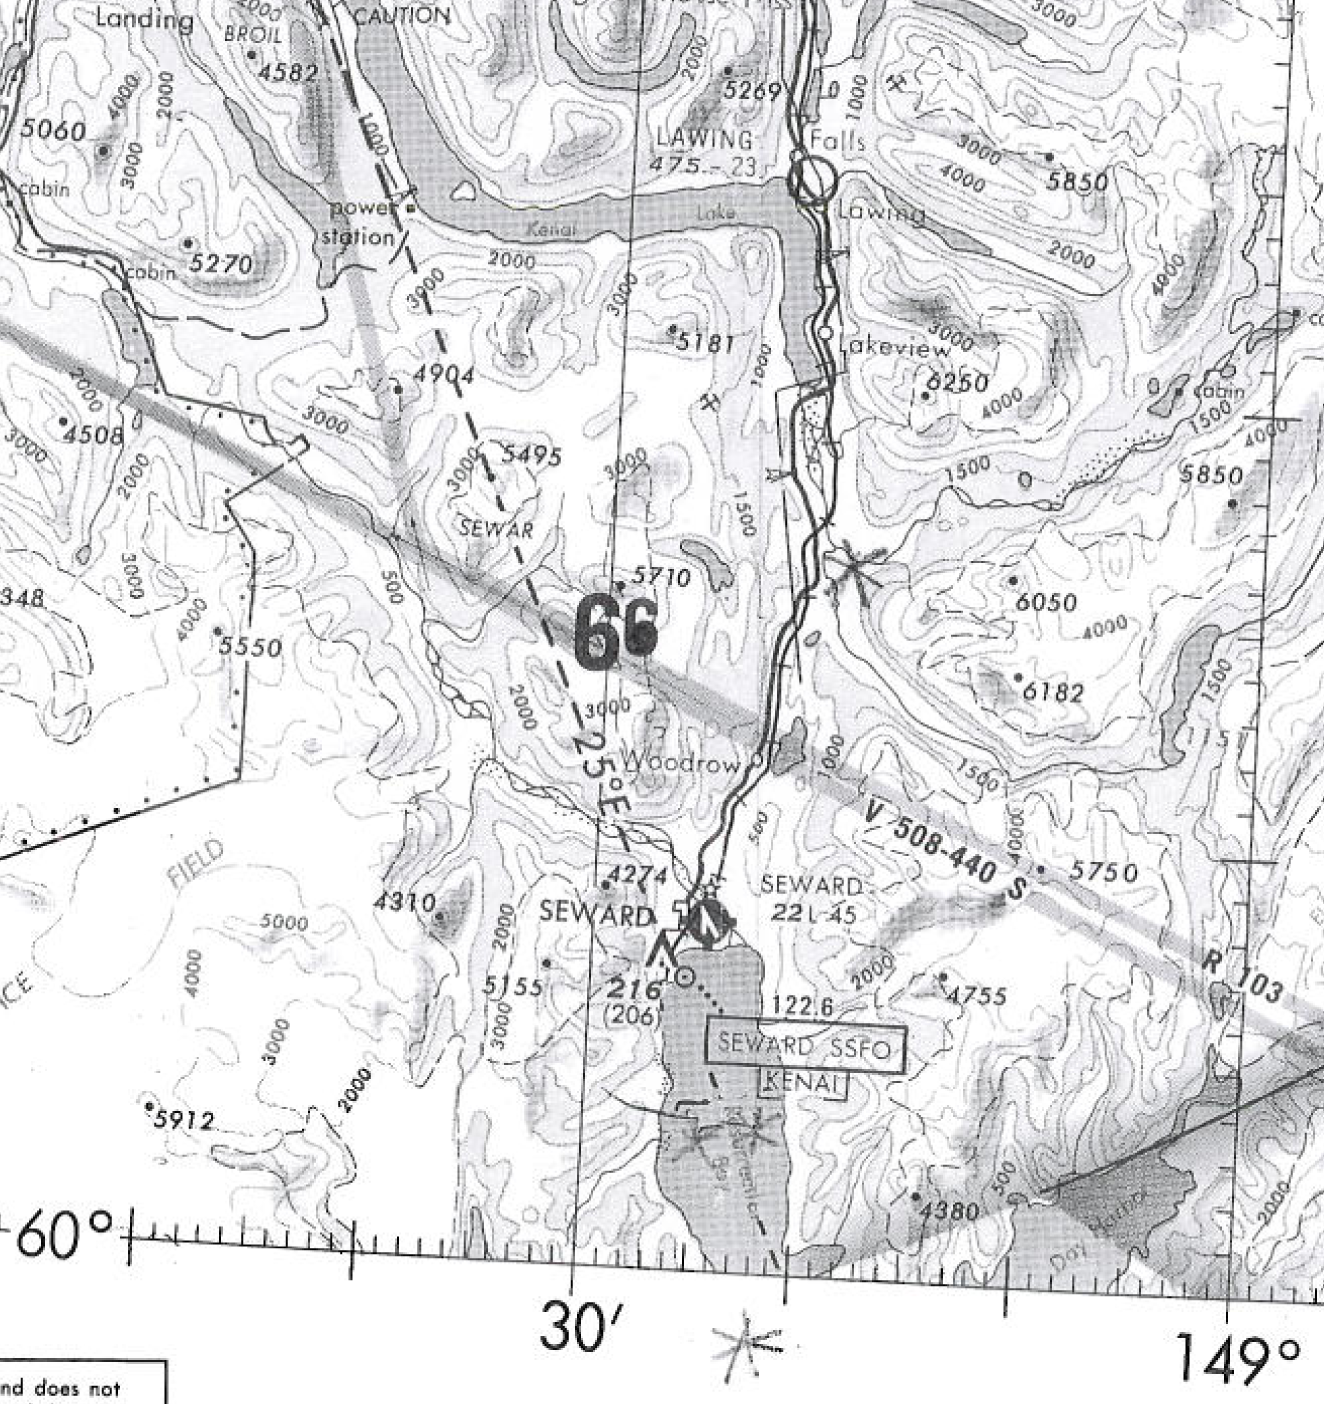 Hansen's original flight map